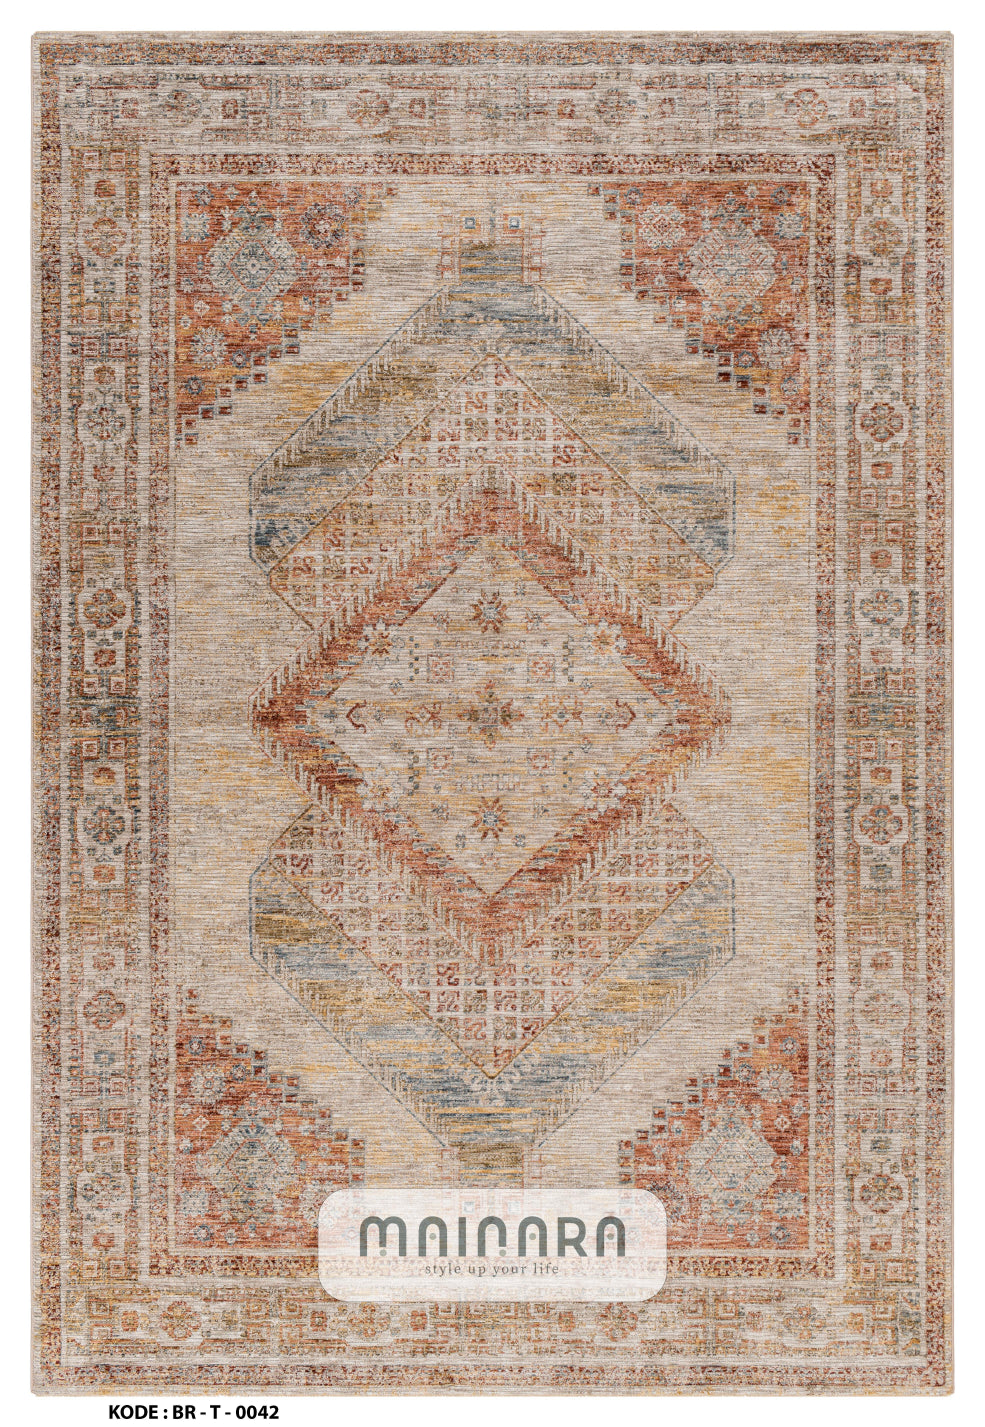 Karpet Tradisional (BR-T-0042) - Brown,Orange,Cream